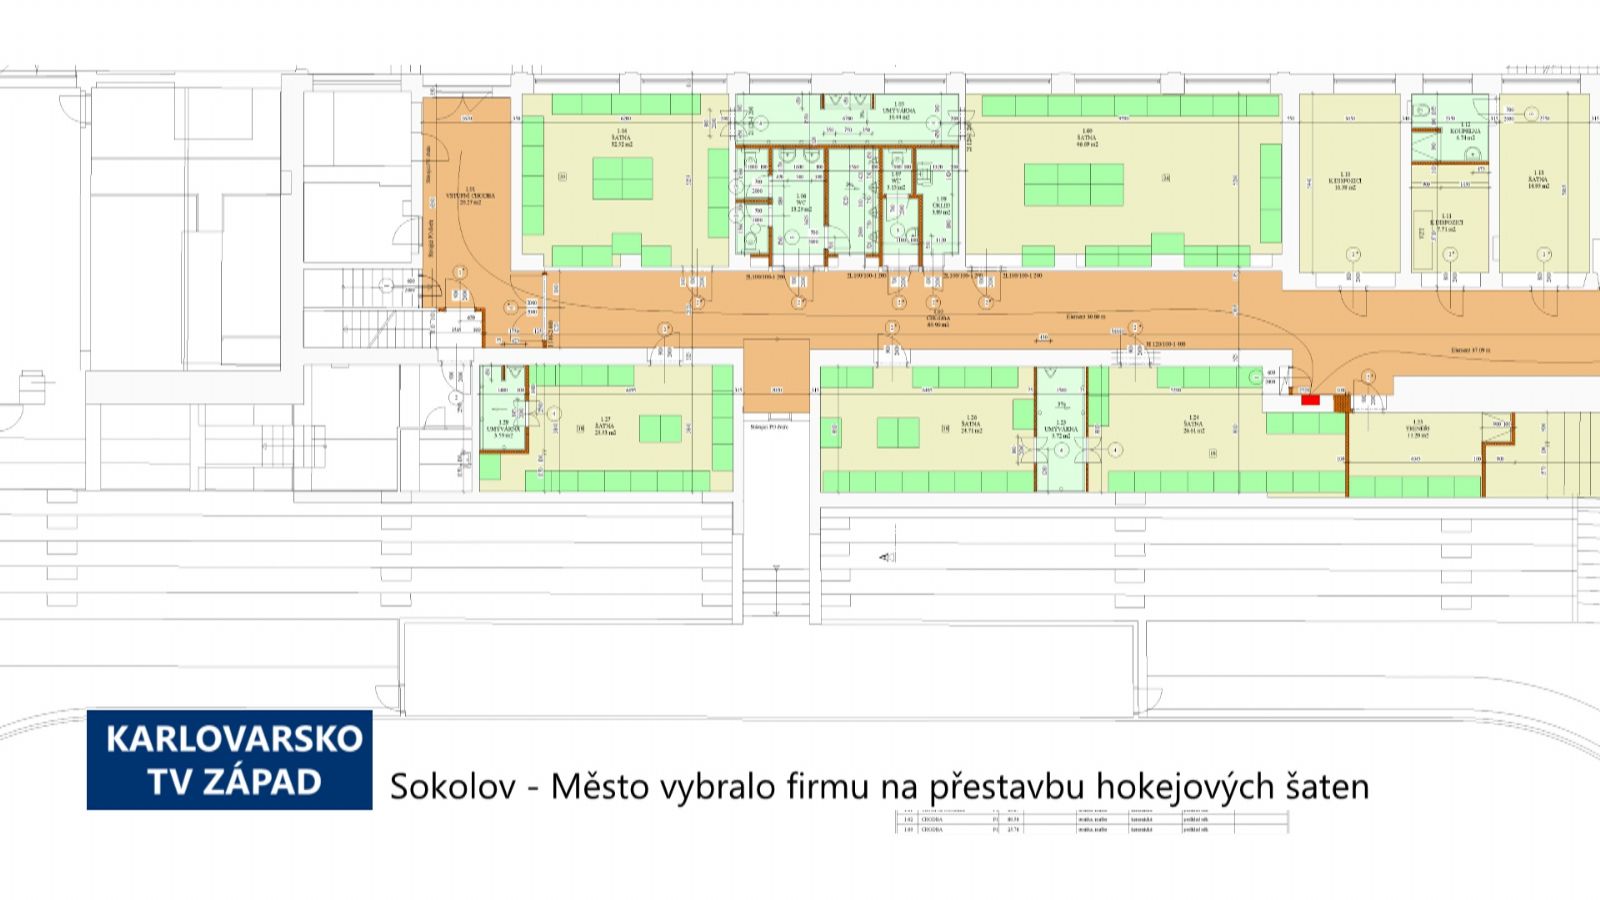 Sokolov: Město vybralo firmu na přestavbu hokejových šaten (TV Západ)